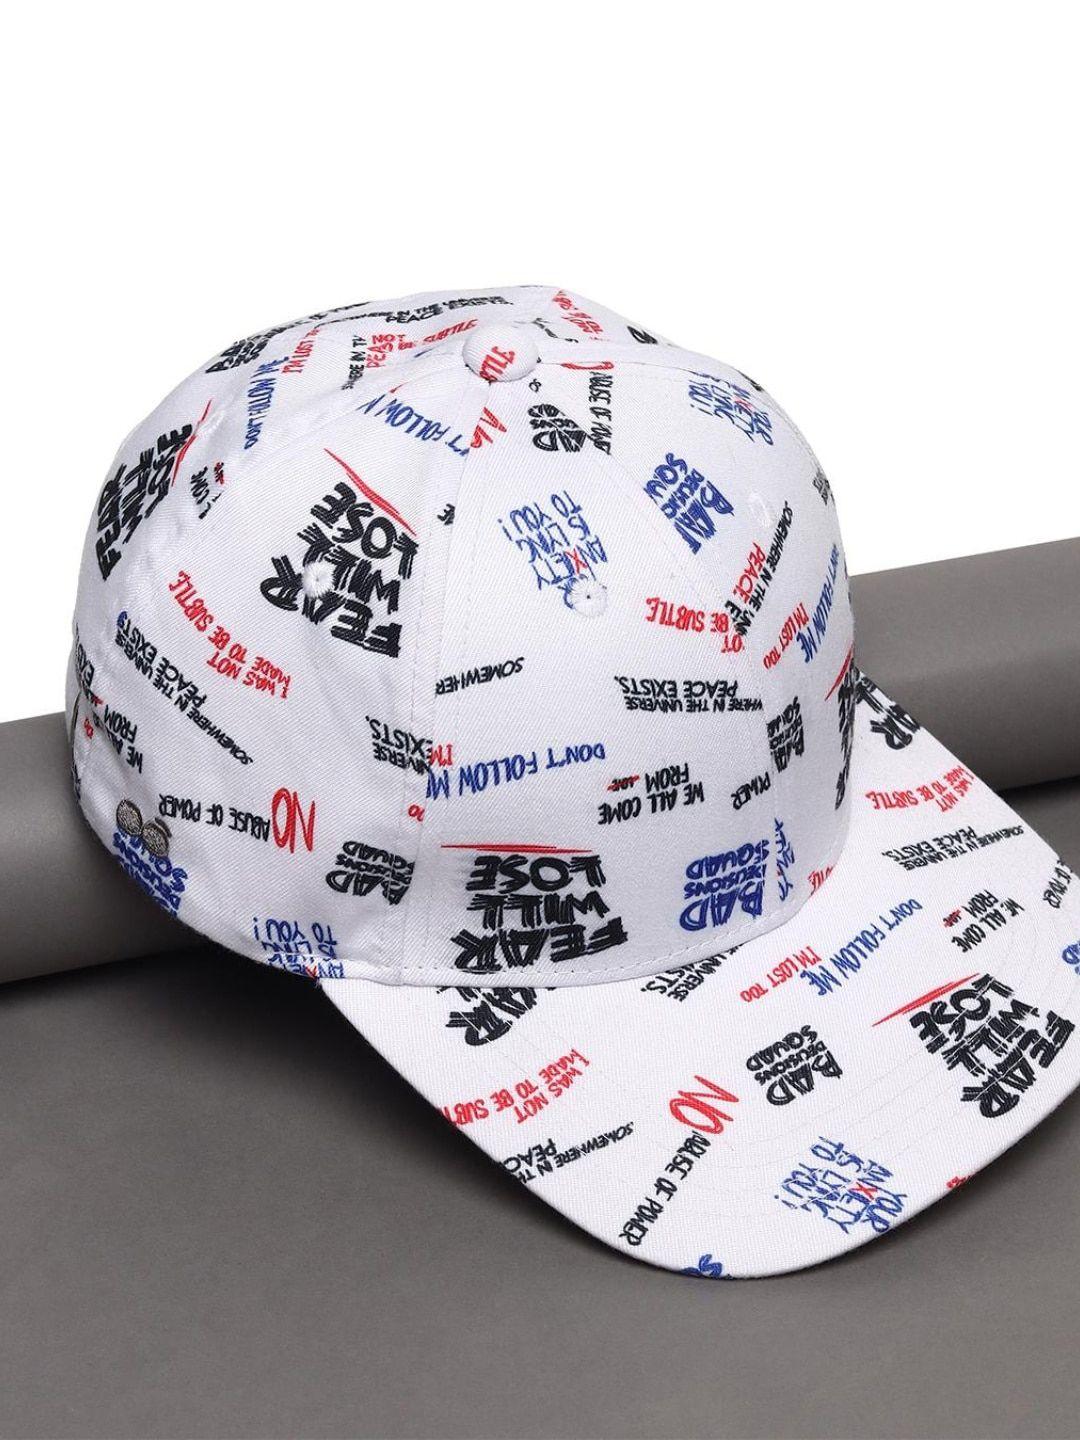 bewakoof printed baseball cap